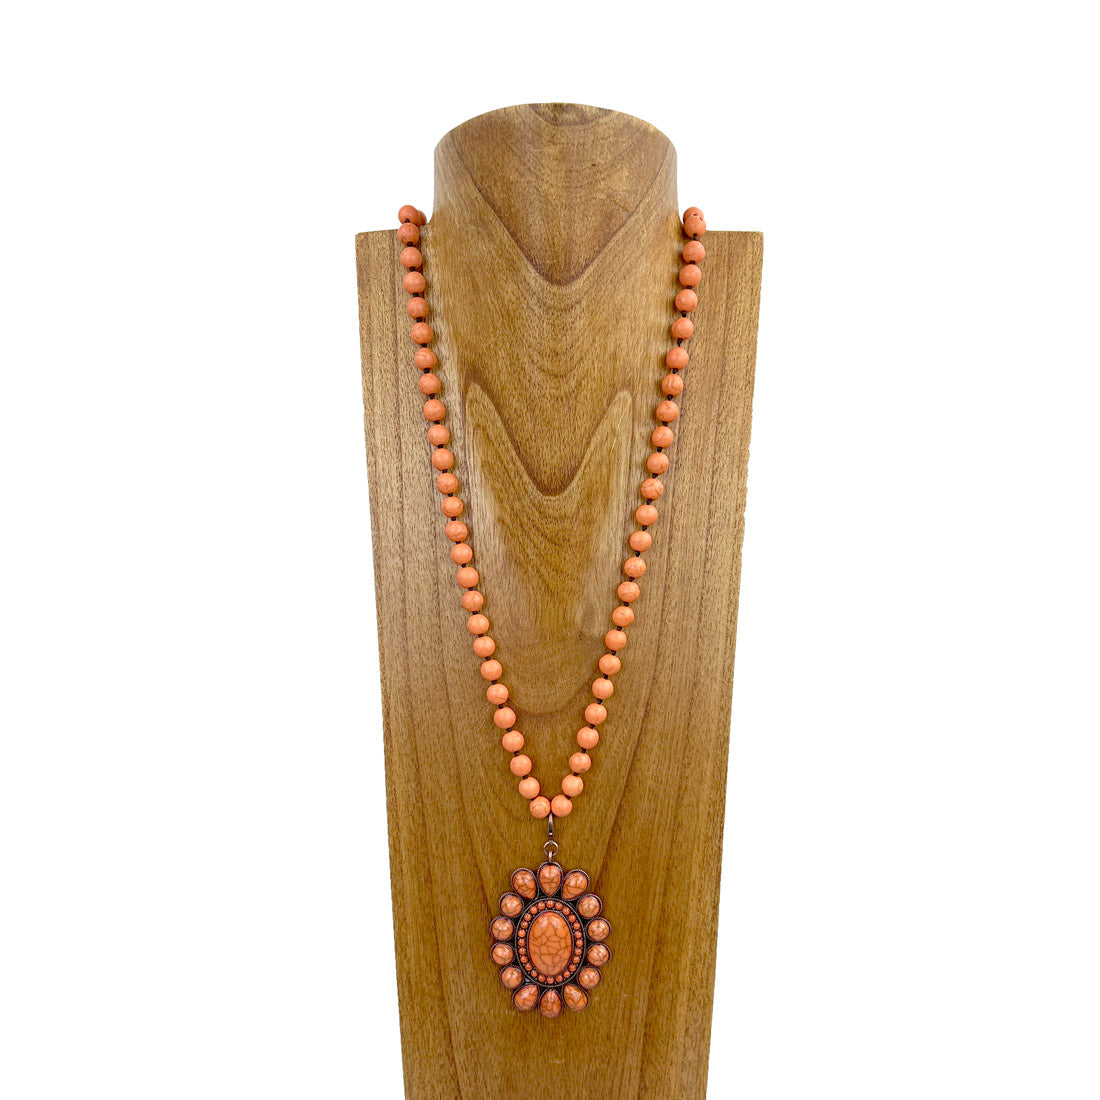 NKZ230924-06     34 inches 10mm orange stone beads with big orange stone concho Necklace